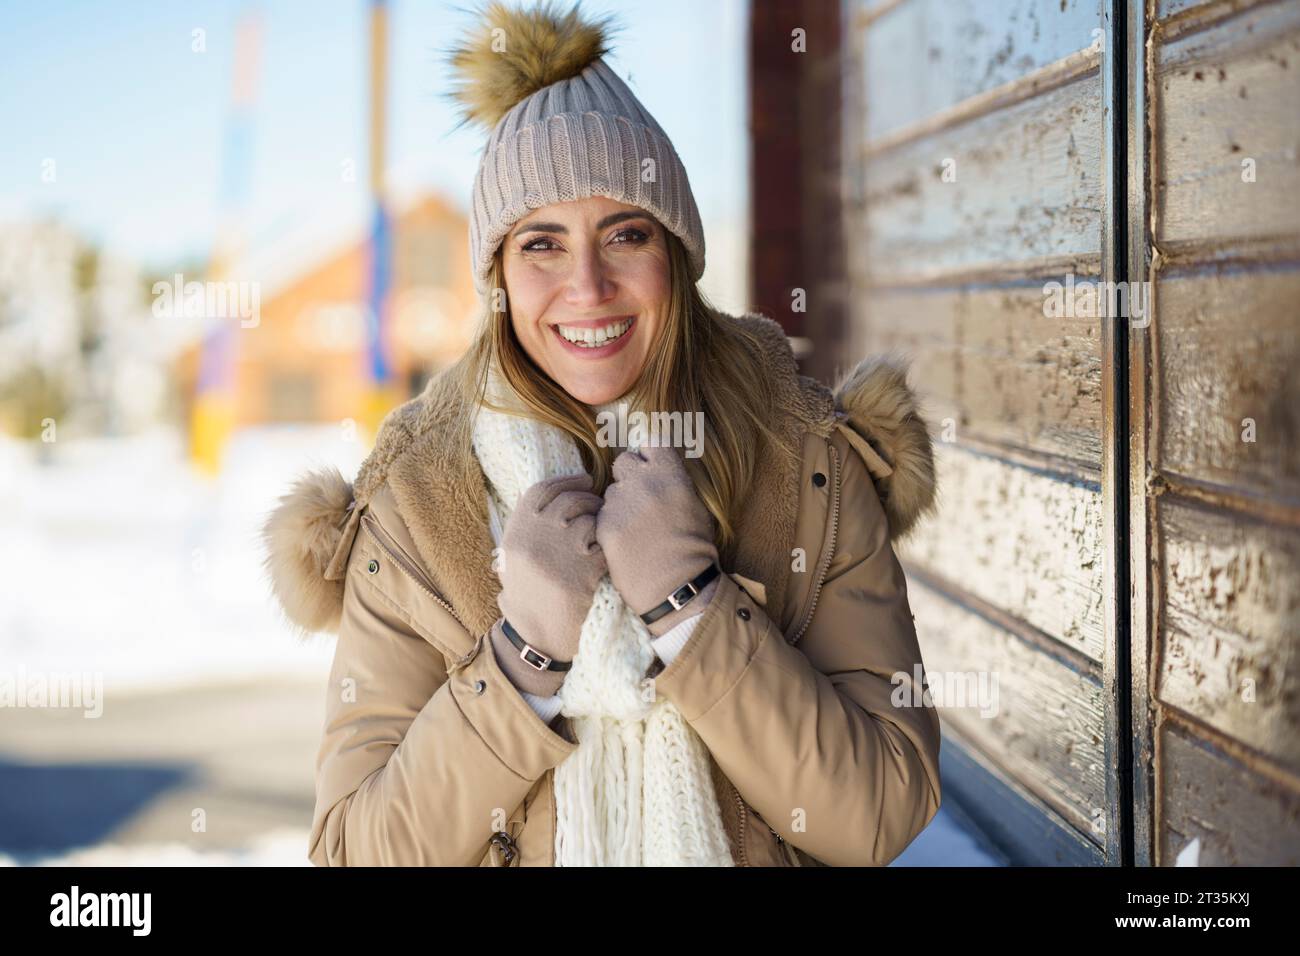 Lächelnde Frau, die sich im Winter kalt fühlt Stockfoto